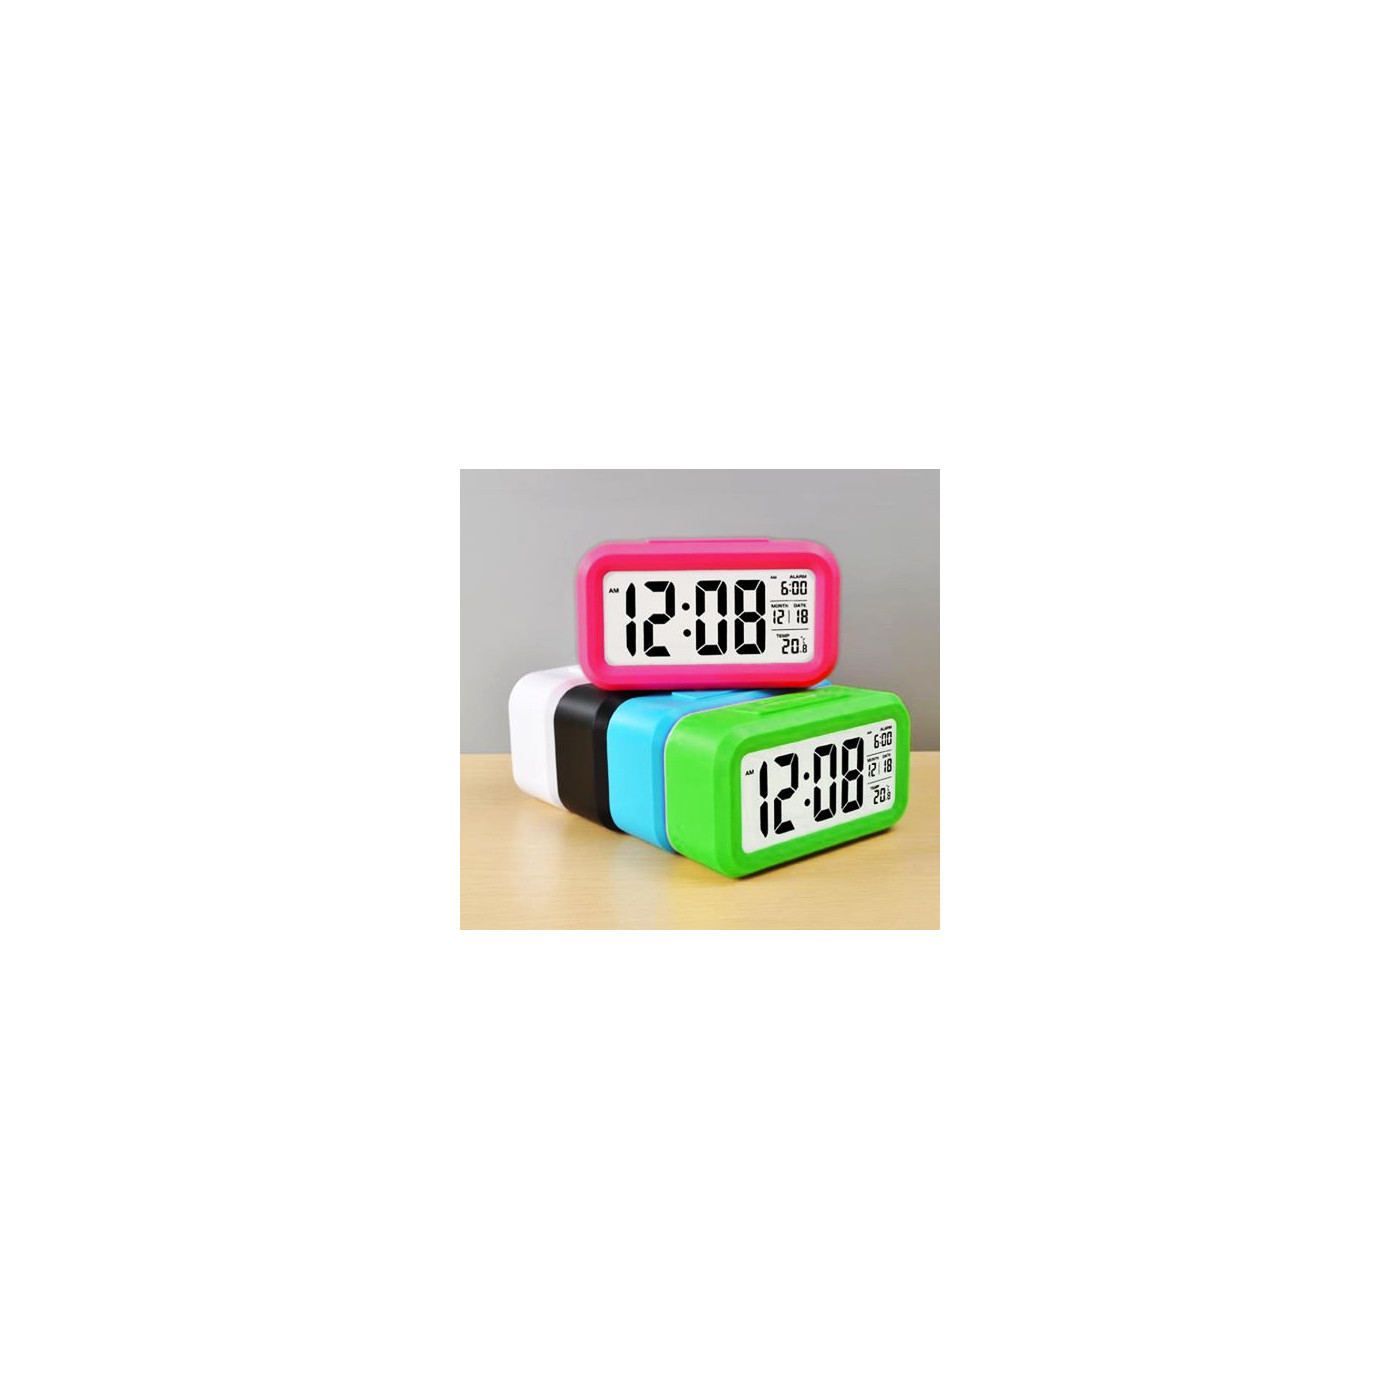 Reloj con alarma en alegre color: verde